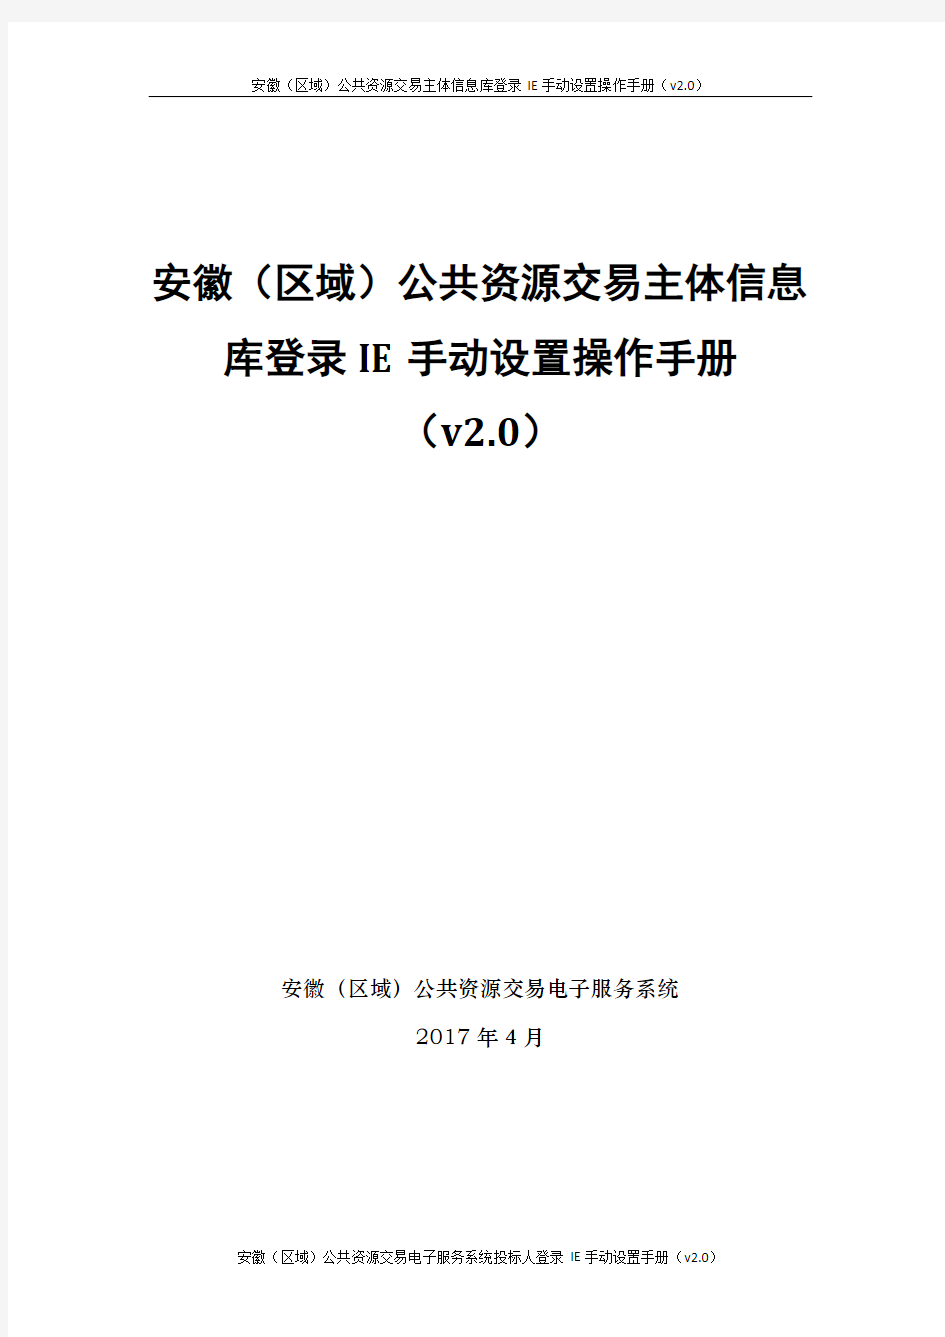 安徽(区域)公共资源交易主体信息库登录IE手动设置操作手册(v20)docx